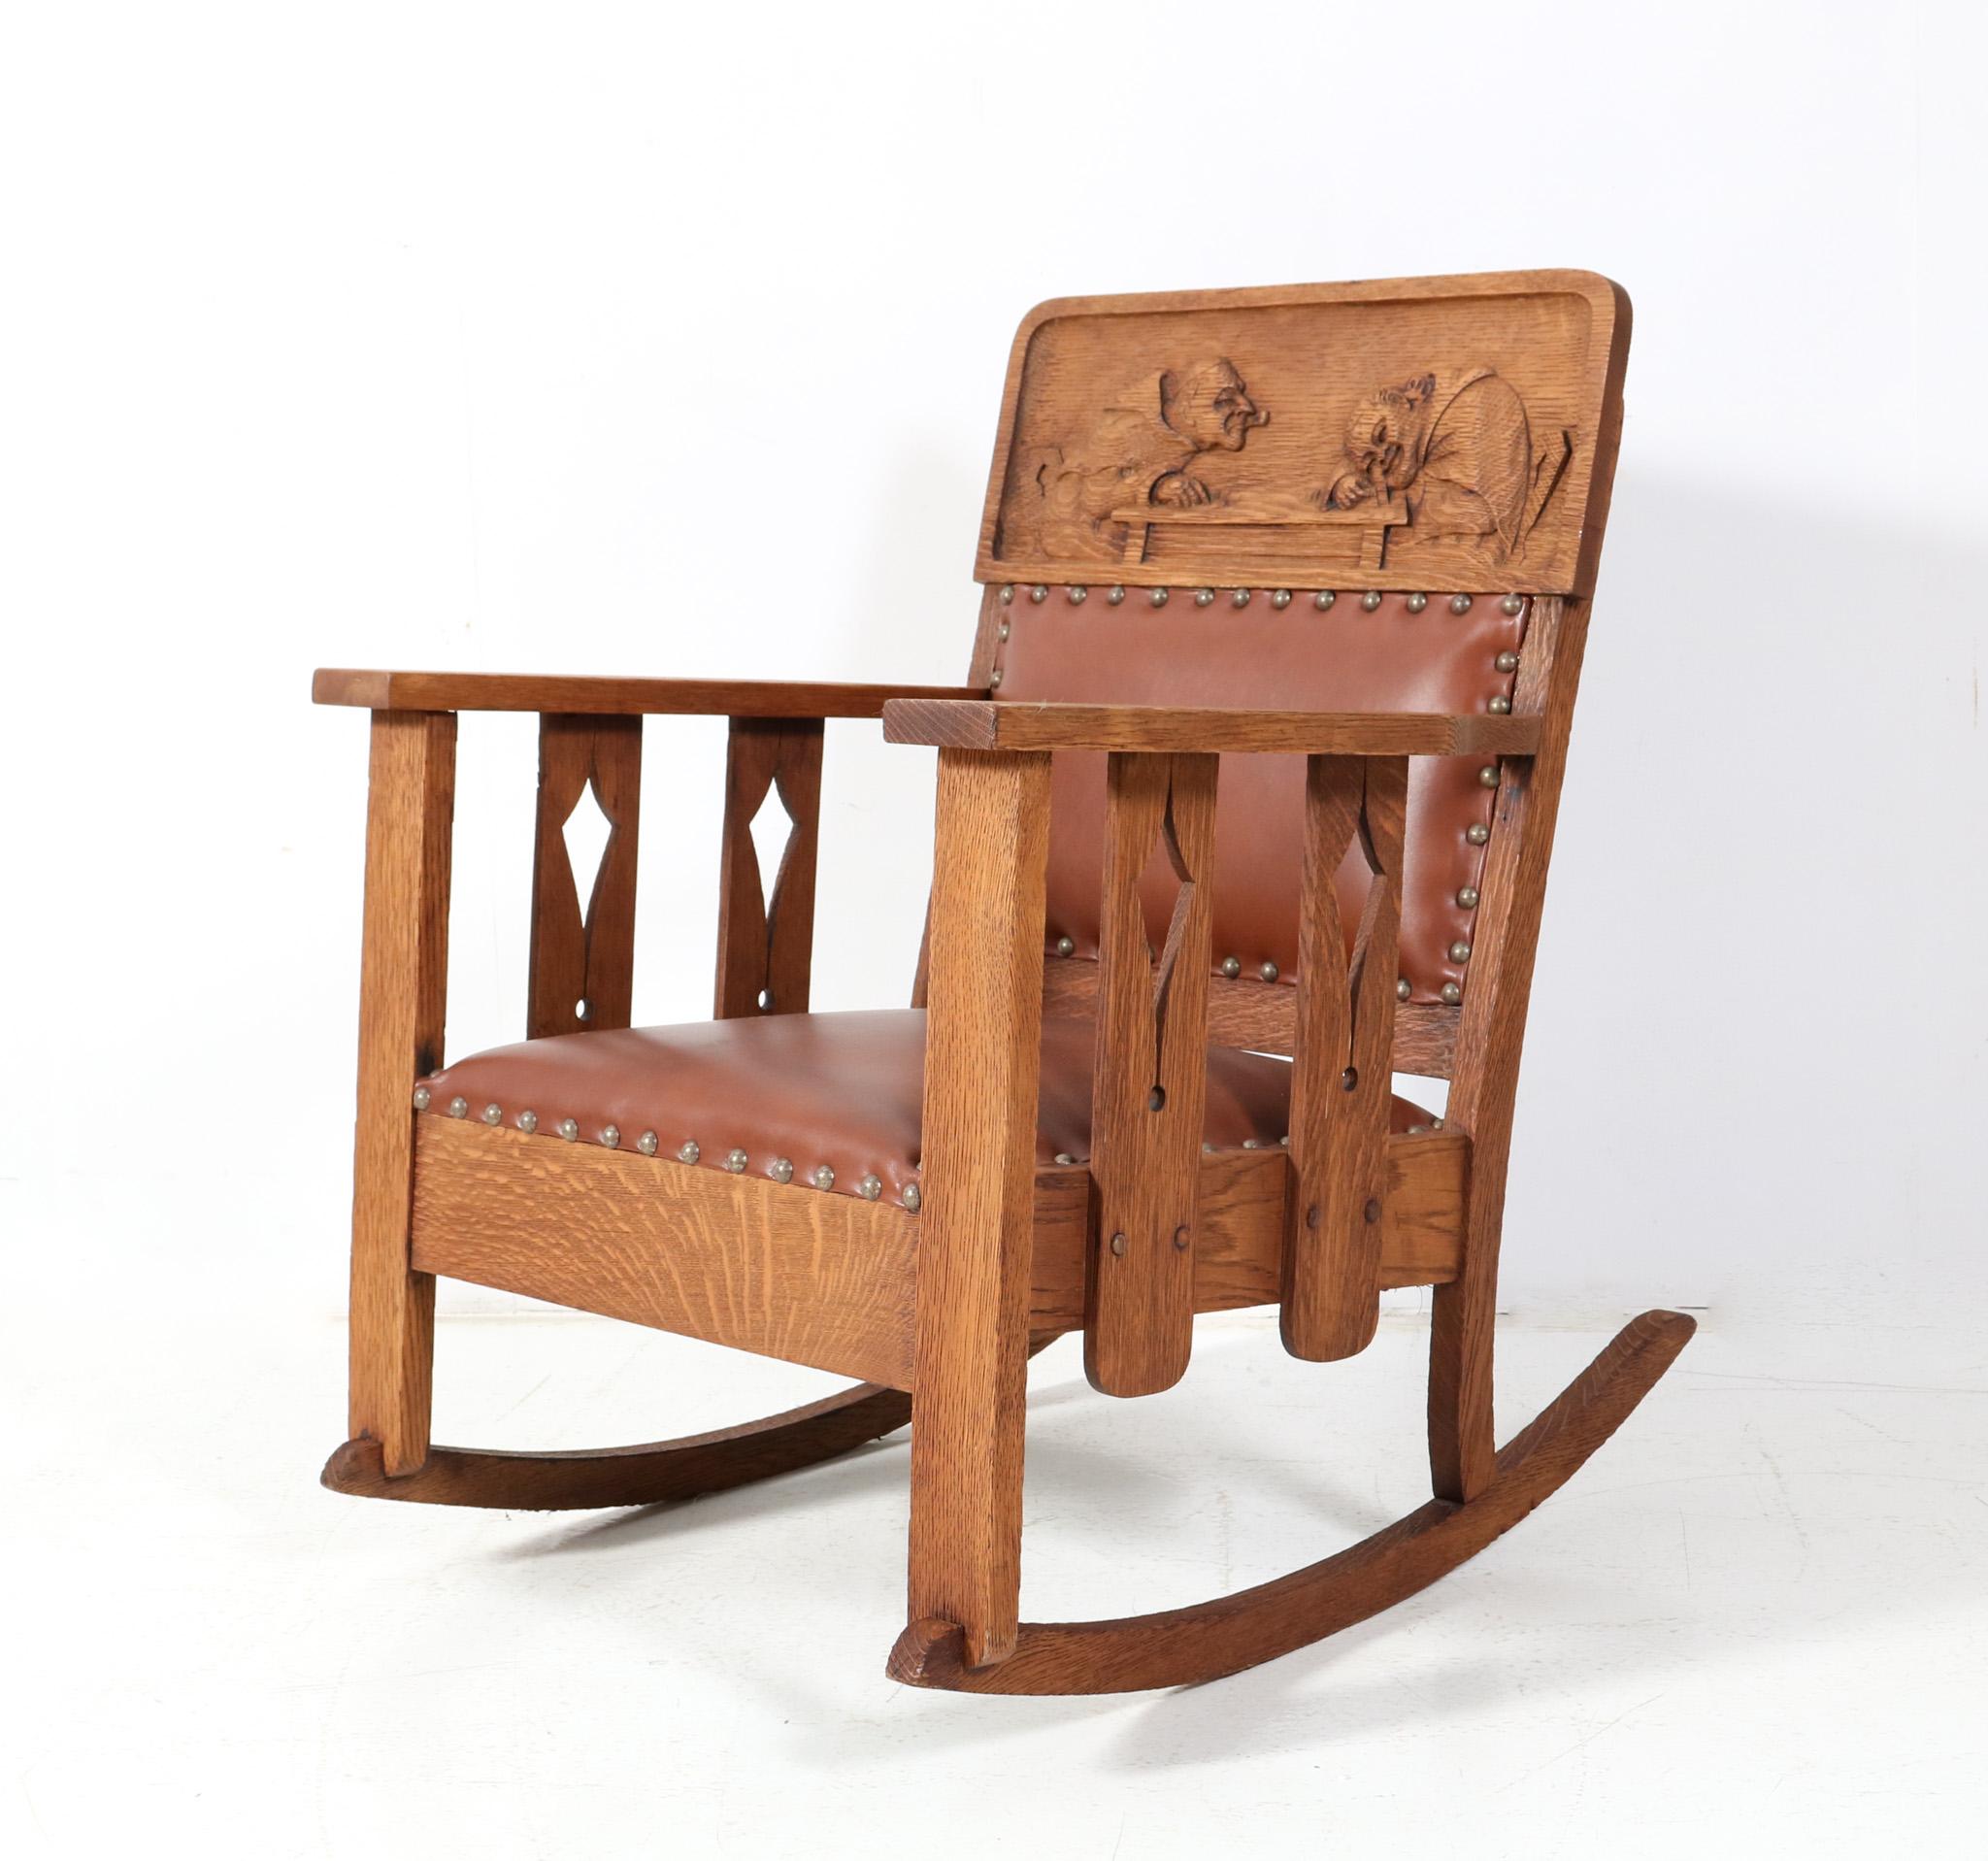 Magnifique et rare fauteuil à bascule Arts & Crafts Mission.
Un design américain frappant des années 1900.
Cadre en chêne scié sur quartier avec deux moines sculptés à la main dans le dossier.
Le rocking-chair a été recouvert d'un cuir marron épais